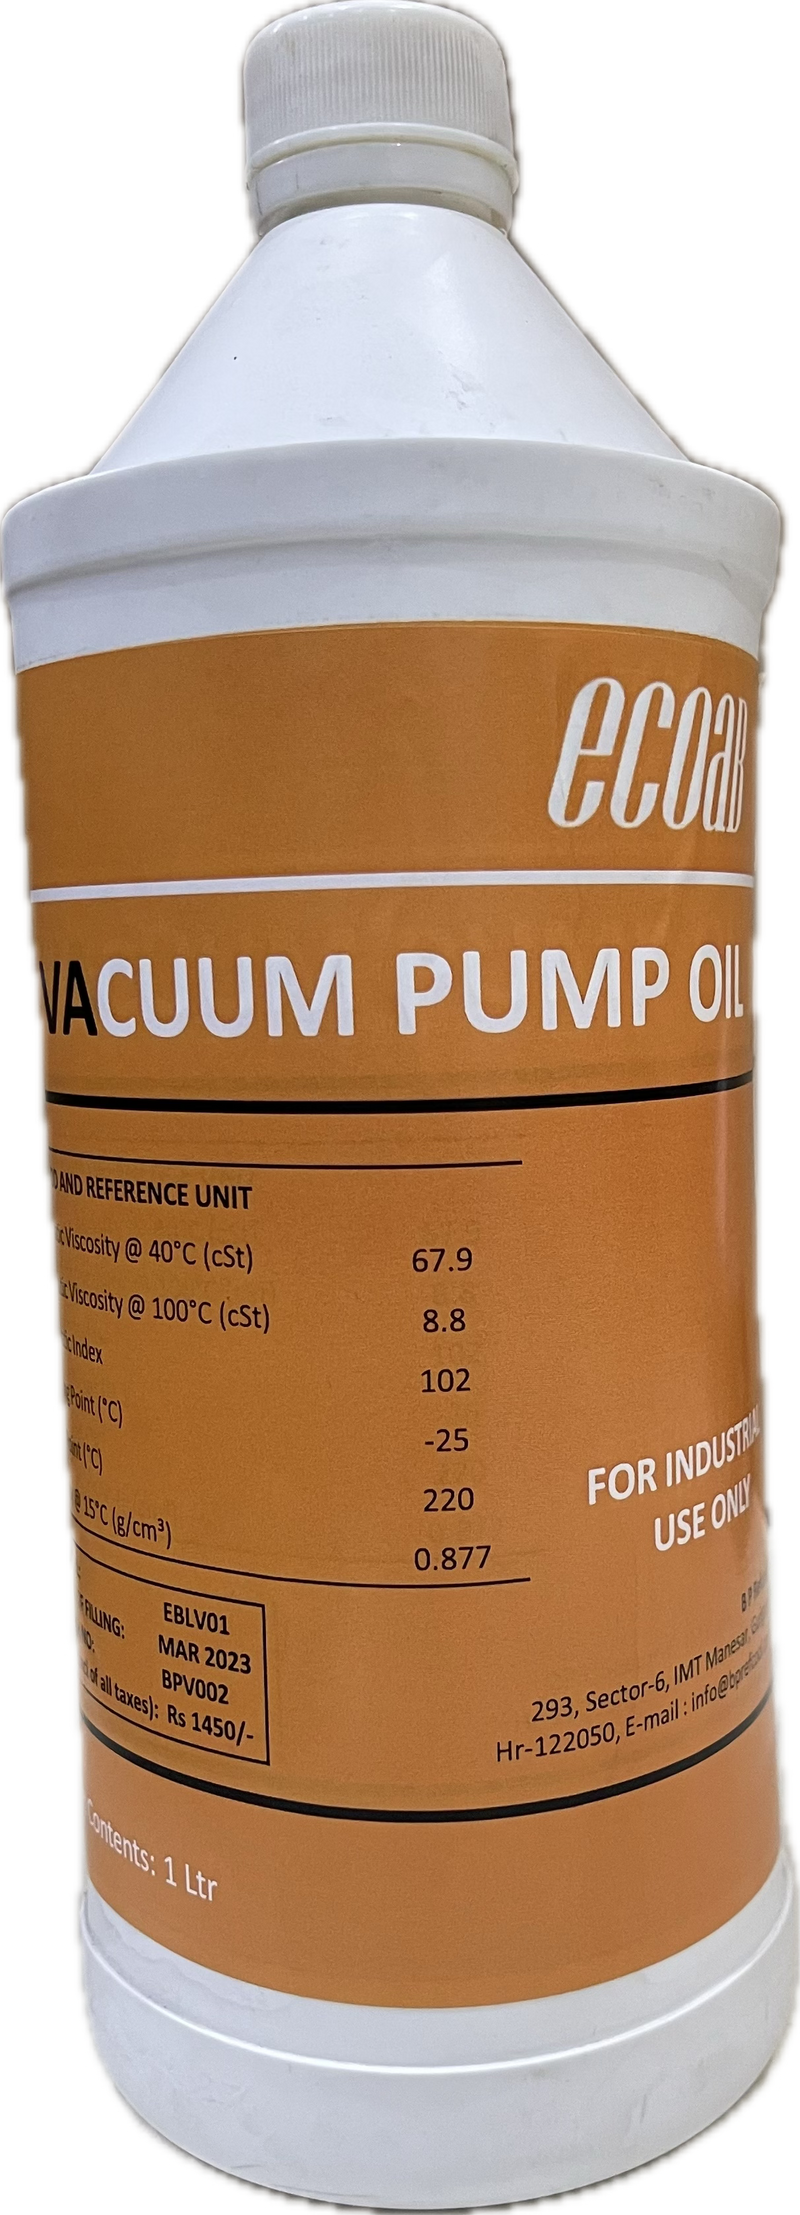 Vacuum Pump Oil- ECOAB (1 ltr)